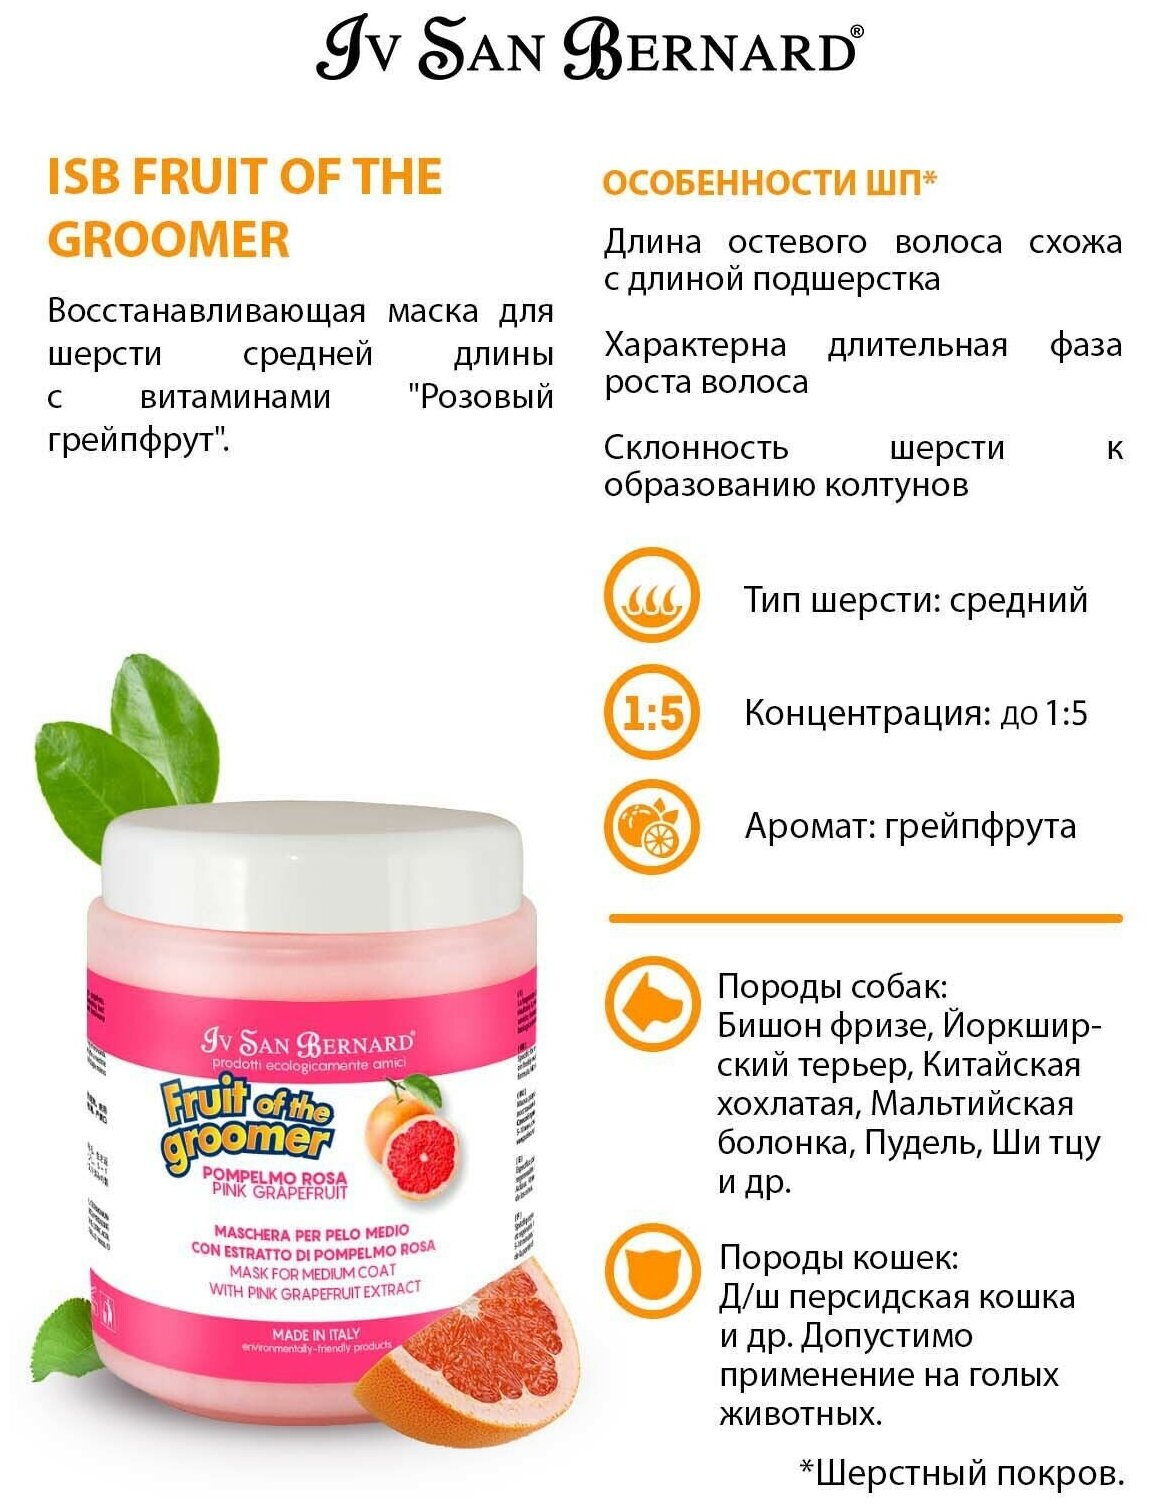 Маска Iv San Bernard Fruit of the Groomer Pink Grapefruit восстанавливающая для шерсти средней длины с витаминами 1 л - фотография № 5